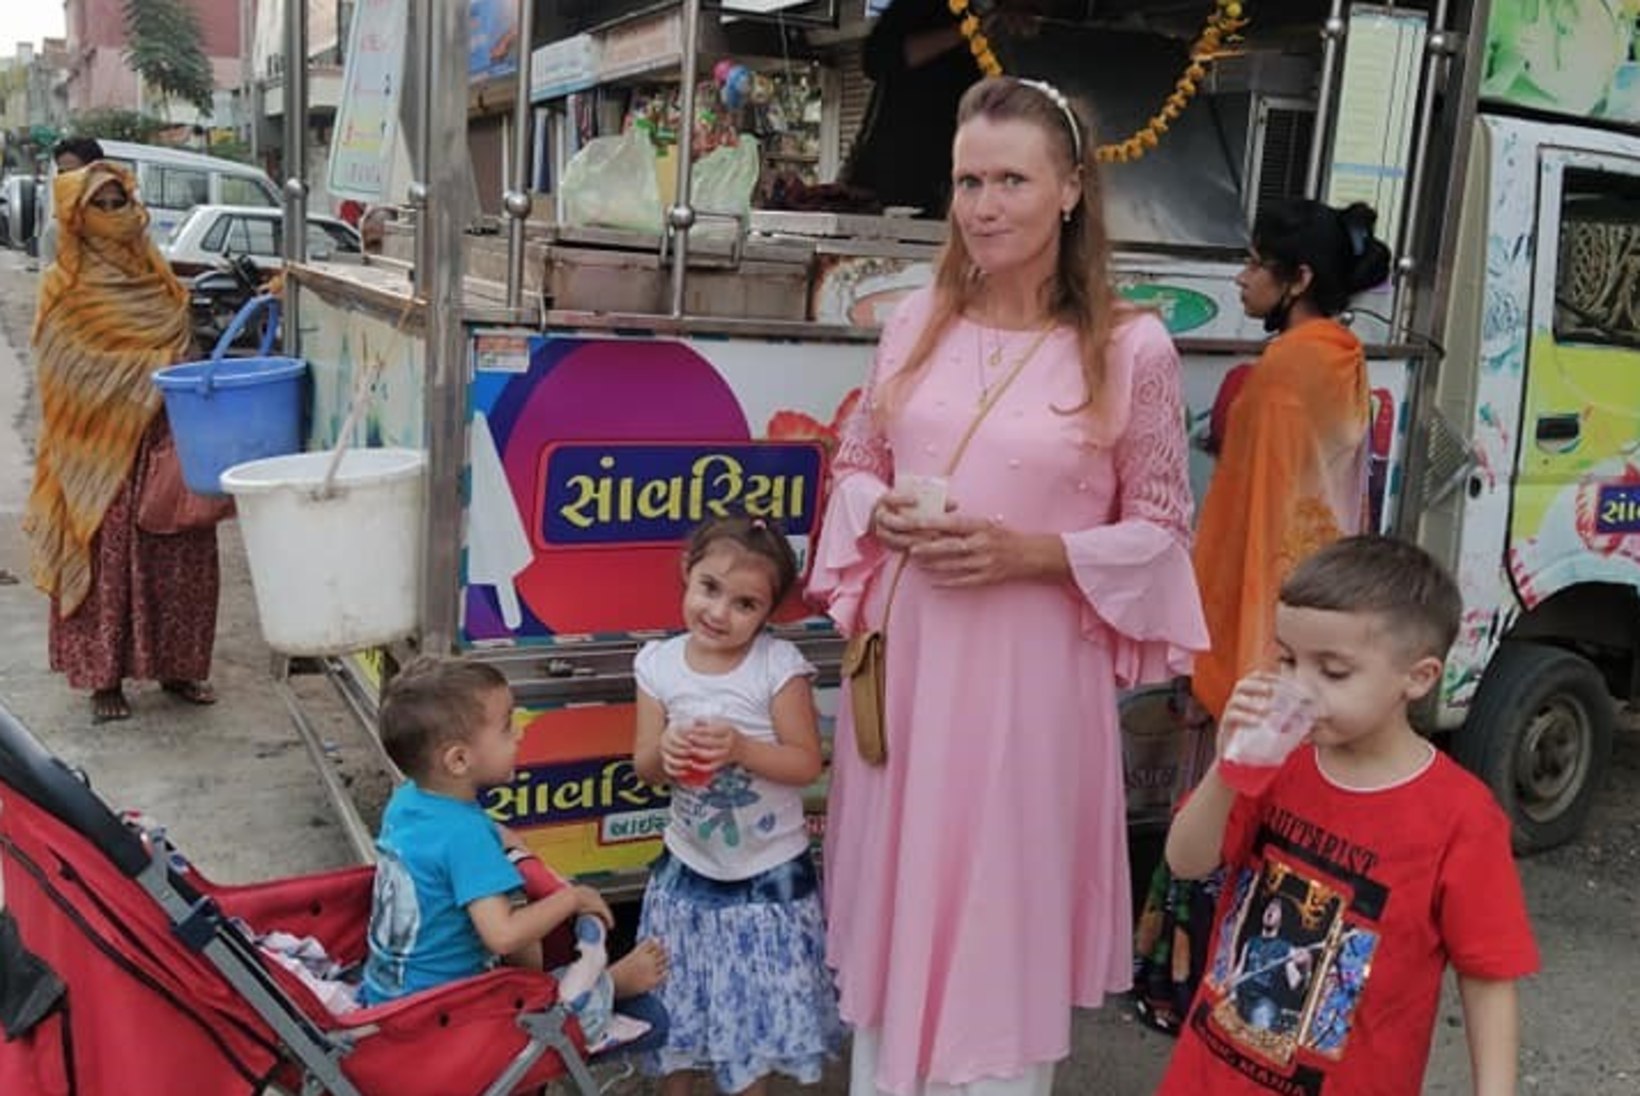 LÕPUKS KOHAL! Airi Vipulkumar Kansar pääses viimaks perega Indiast koju